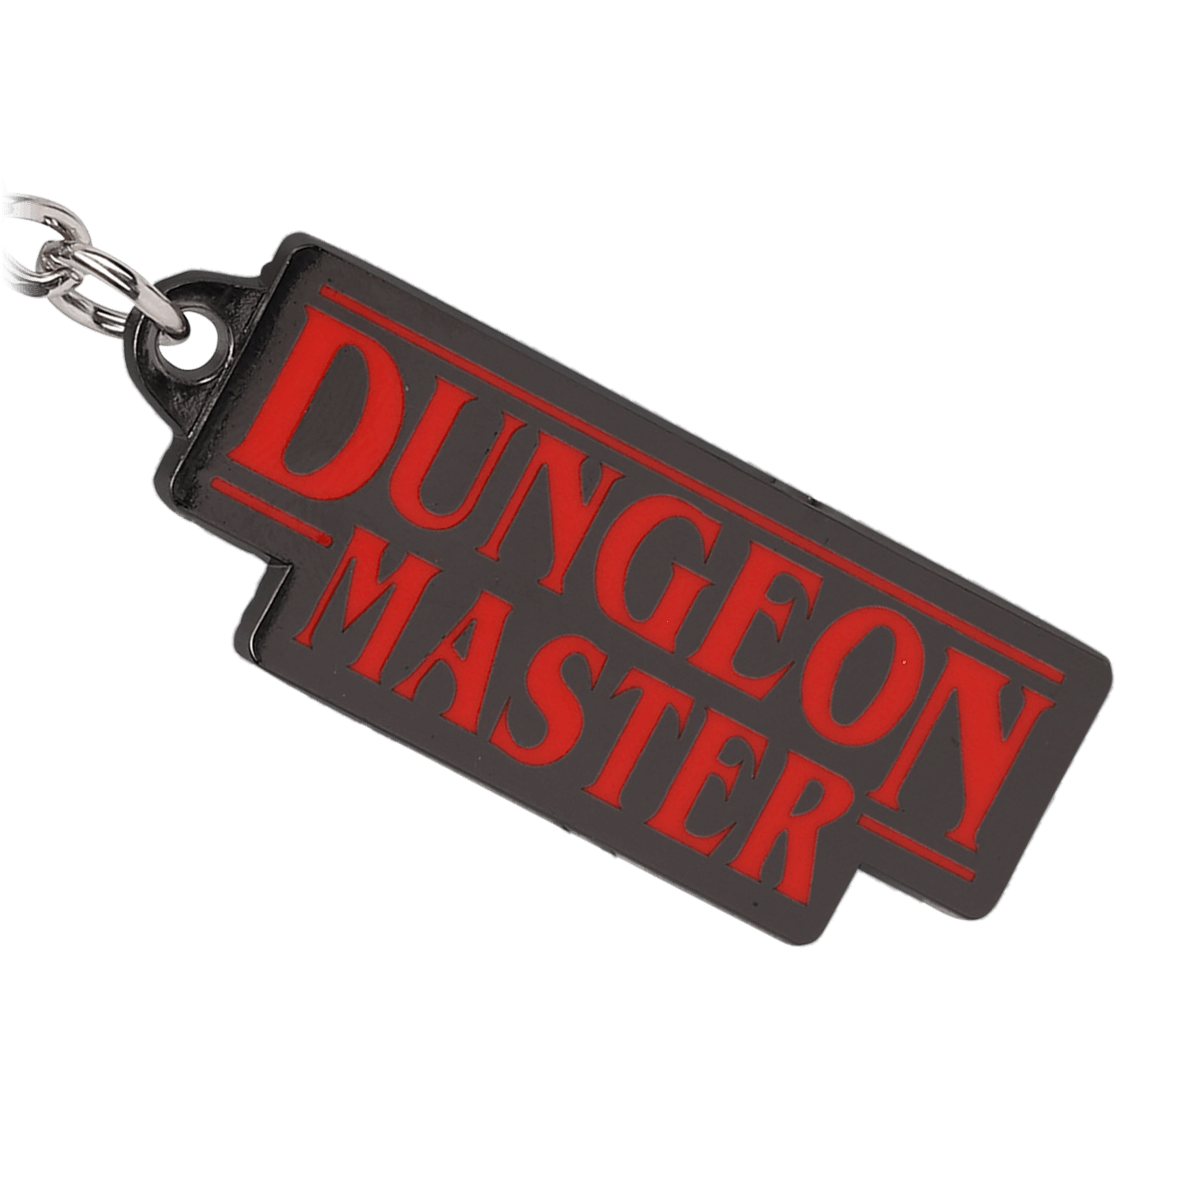 Dungeon Master Keychain